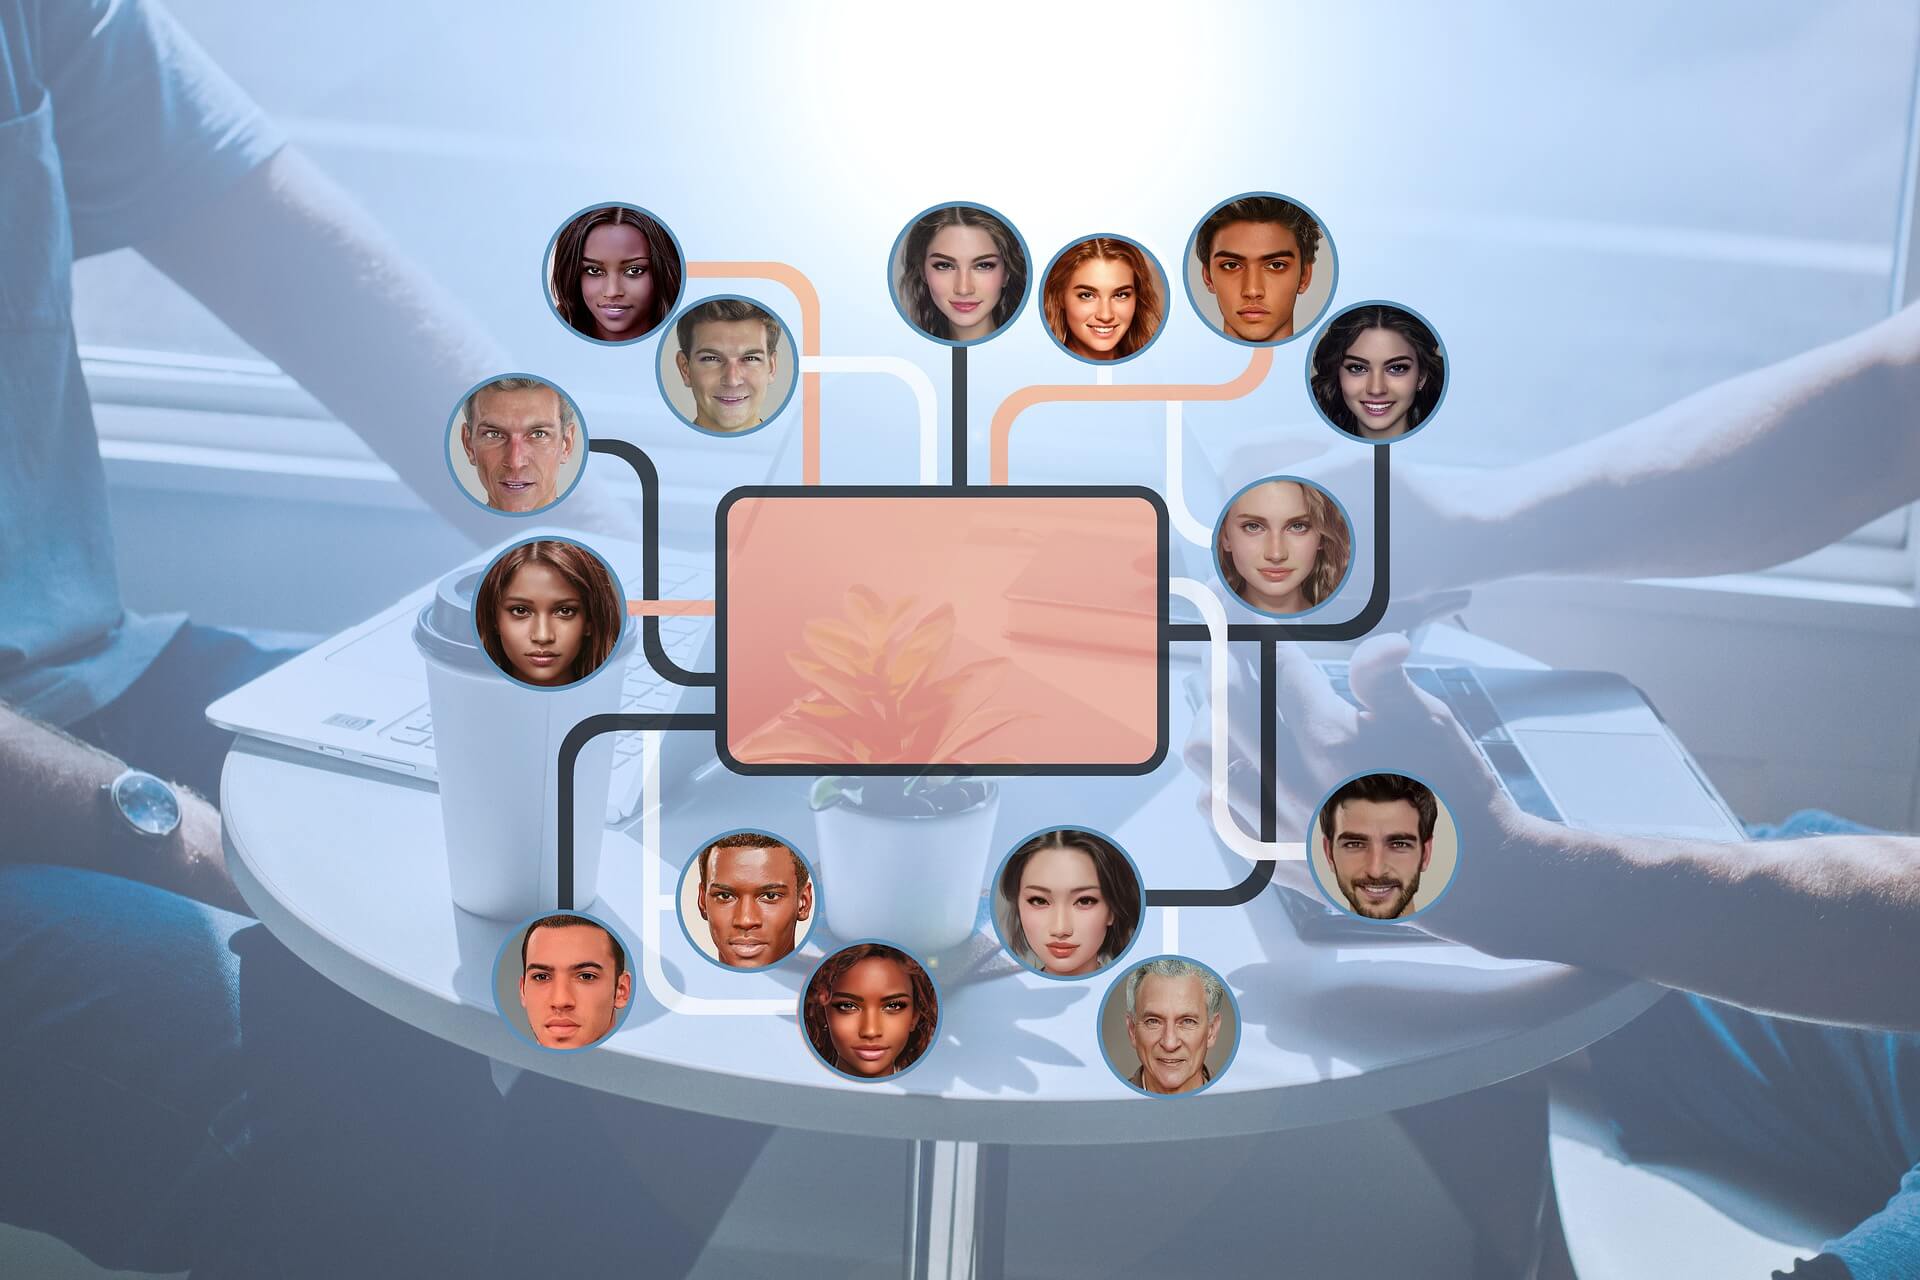 图片展示了多个不同肤色和特征的人脸浮现在一台中央设备周围，形成了一种科技感十足的会议场景。